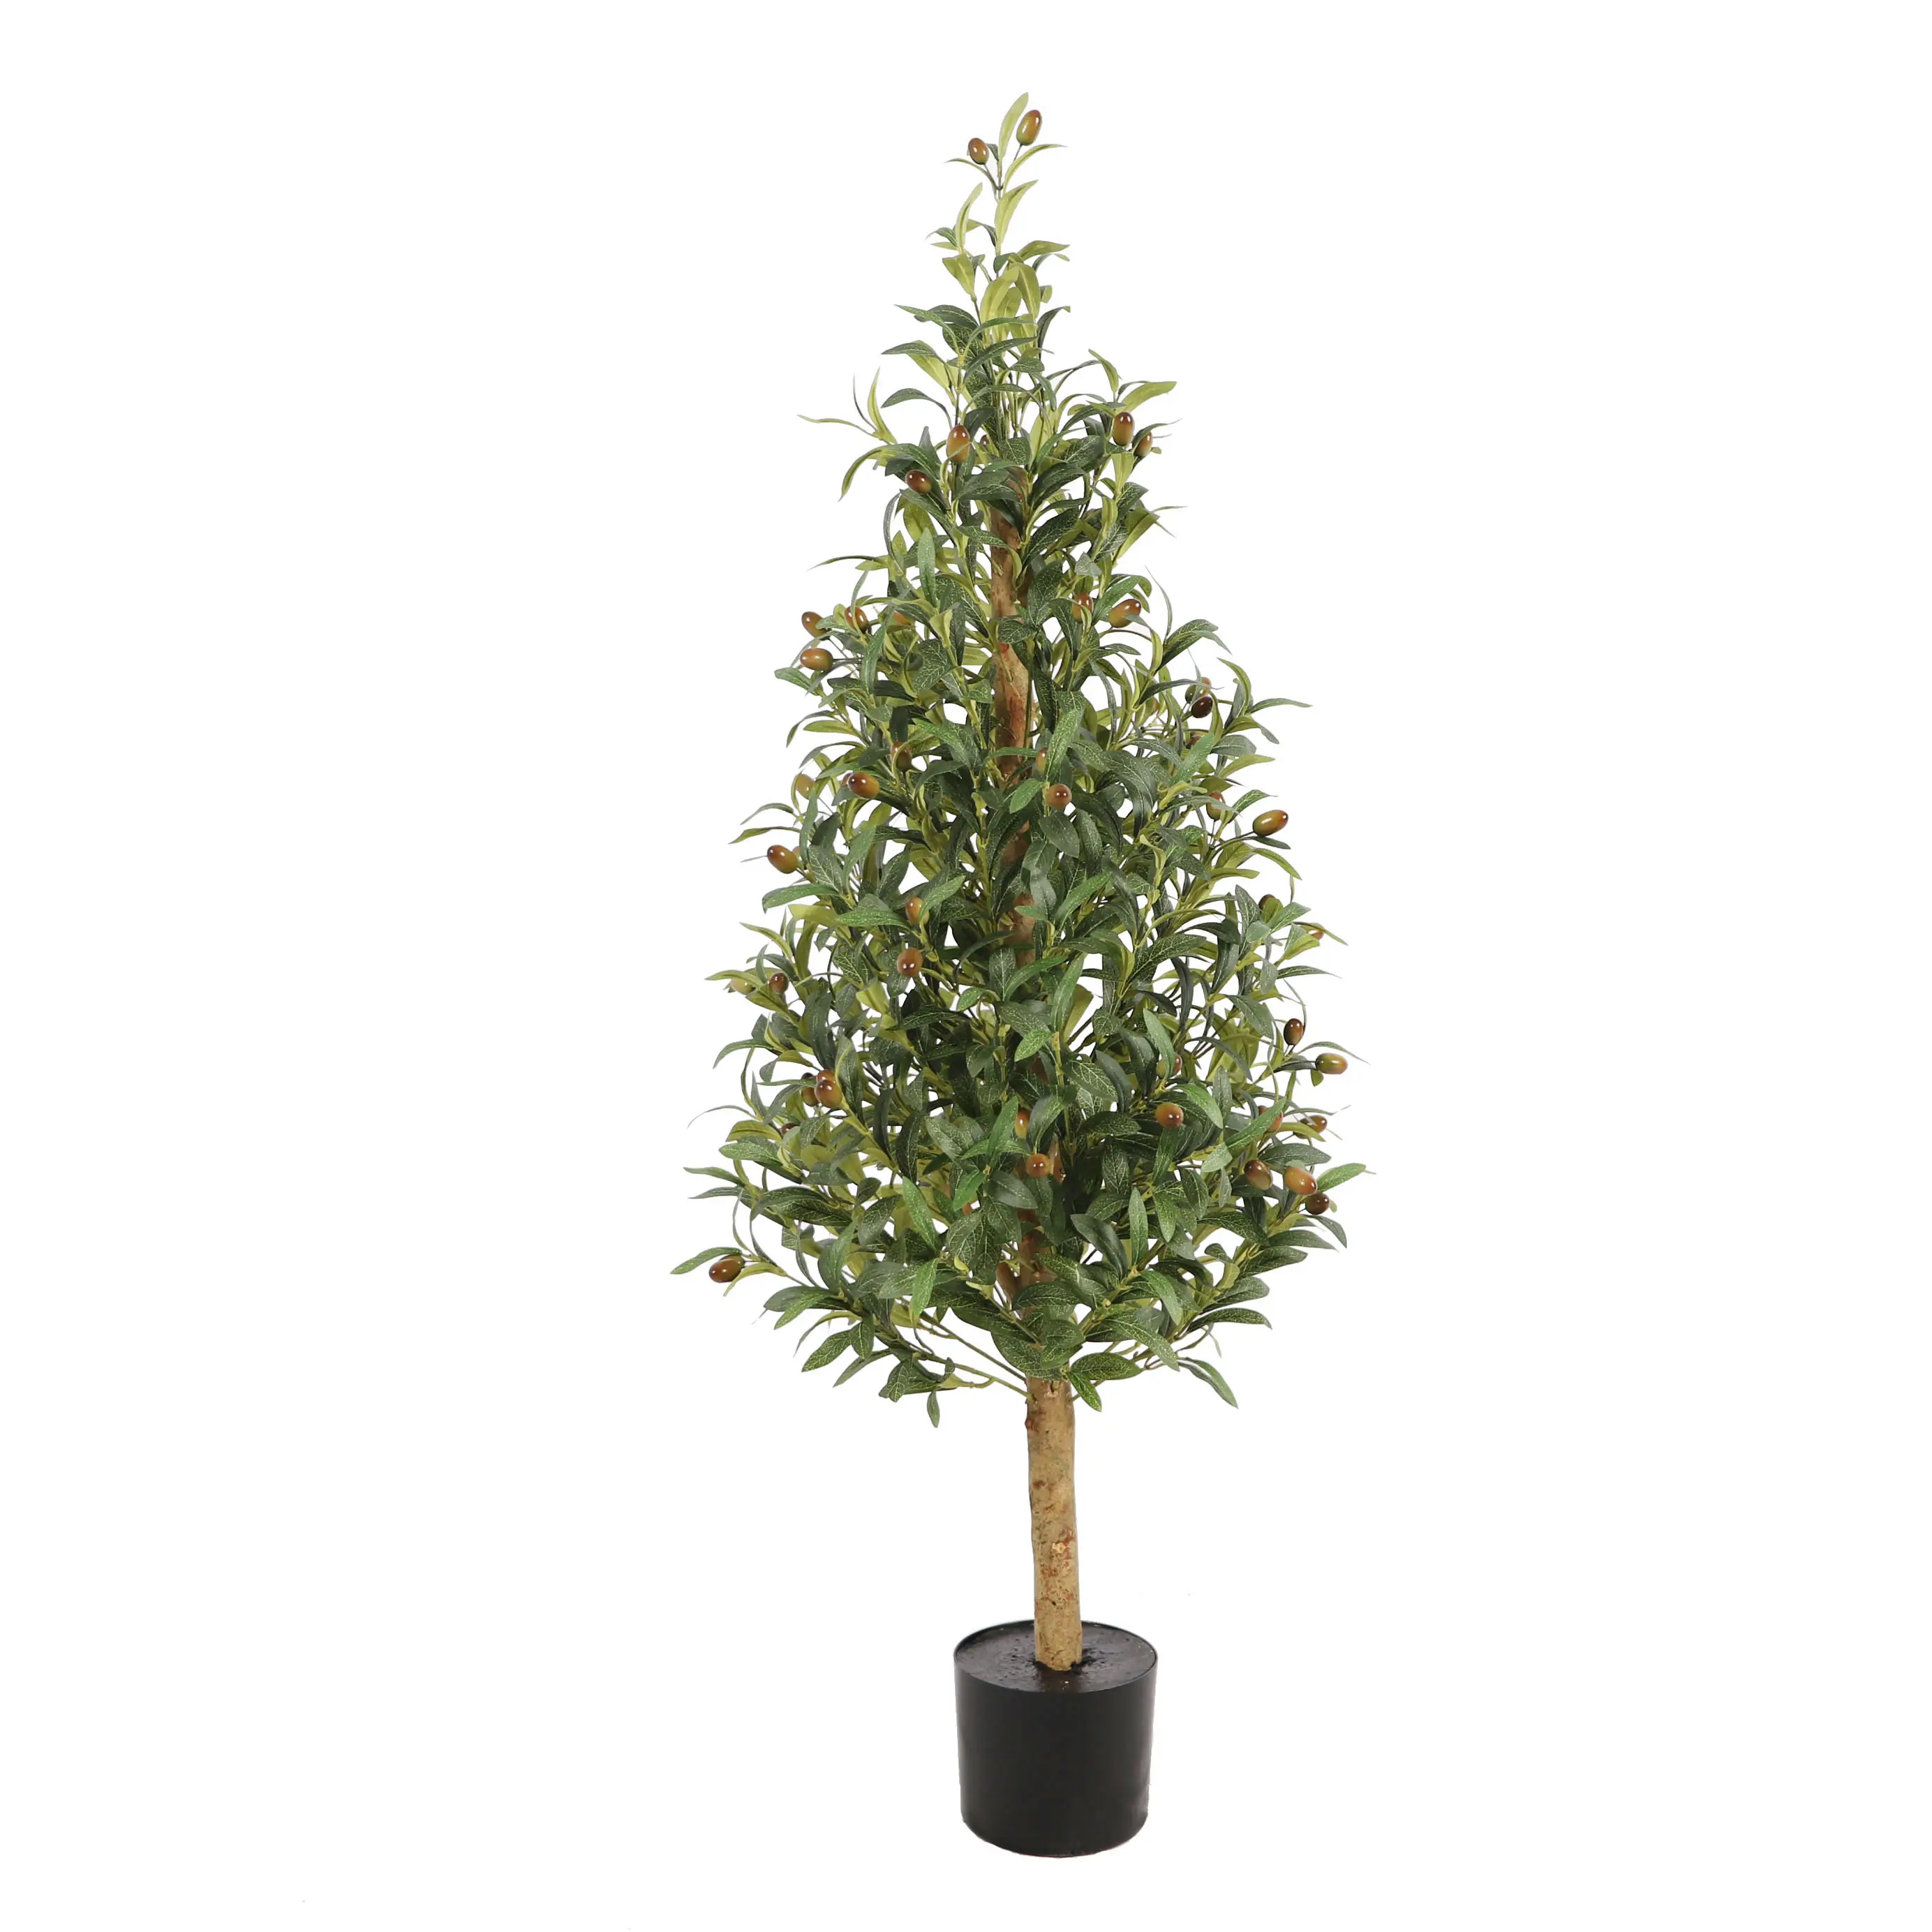 Dekoration künstlicher bonsai grüne blume pflanze künstlicher baum für haus weihnachtsprodukte olivenbaum für innenräume